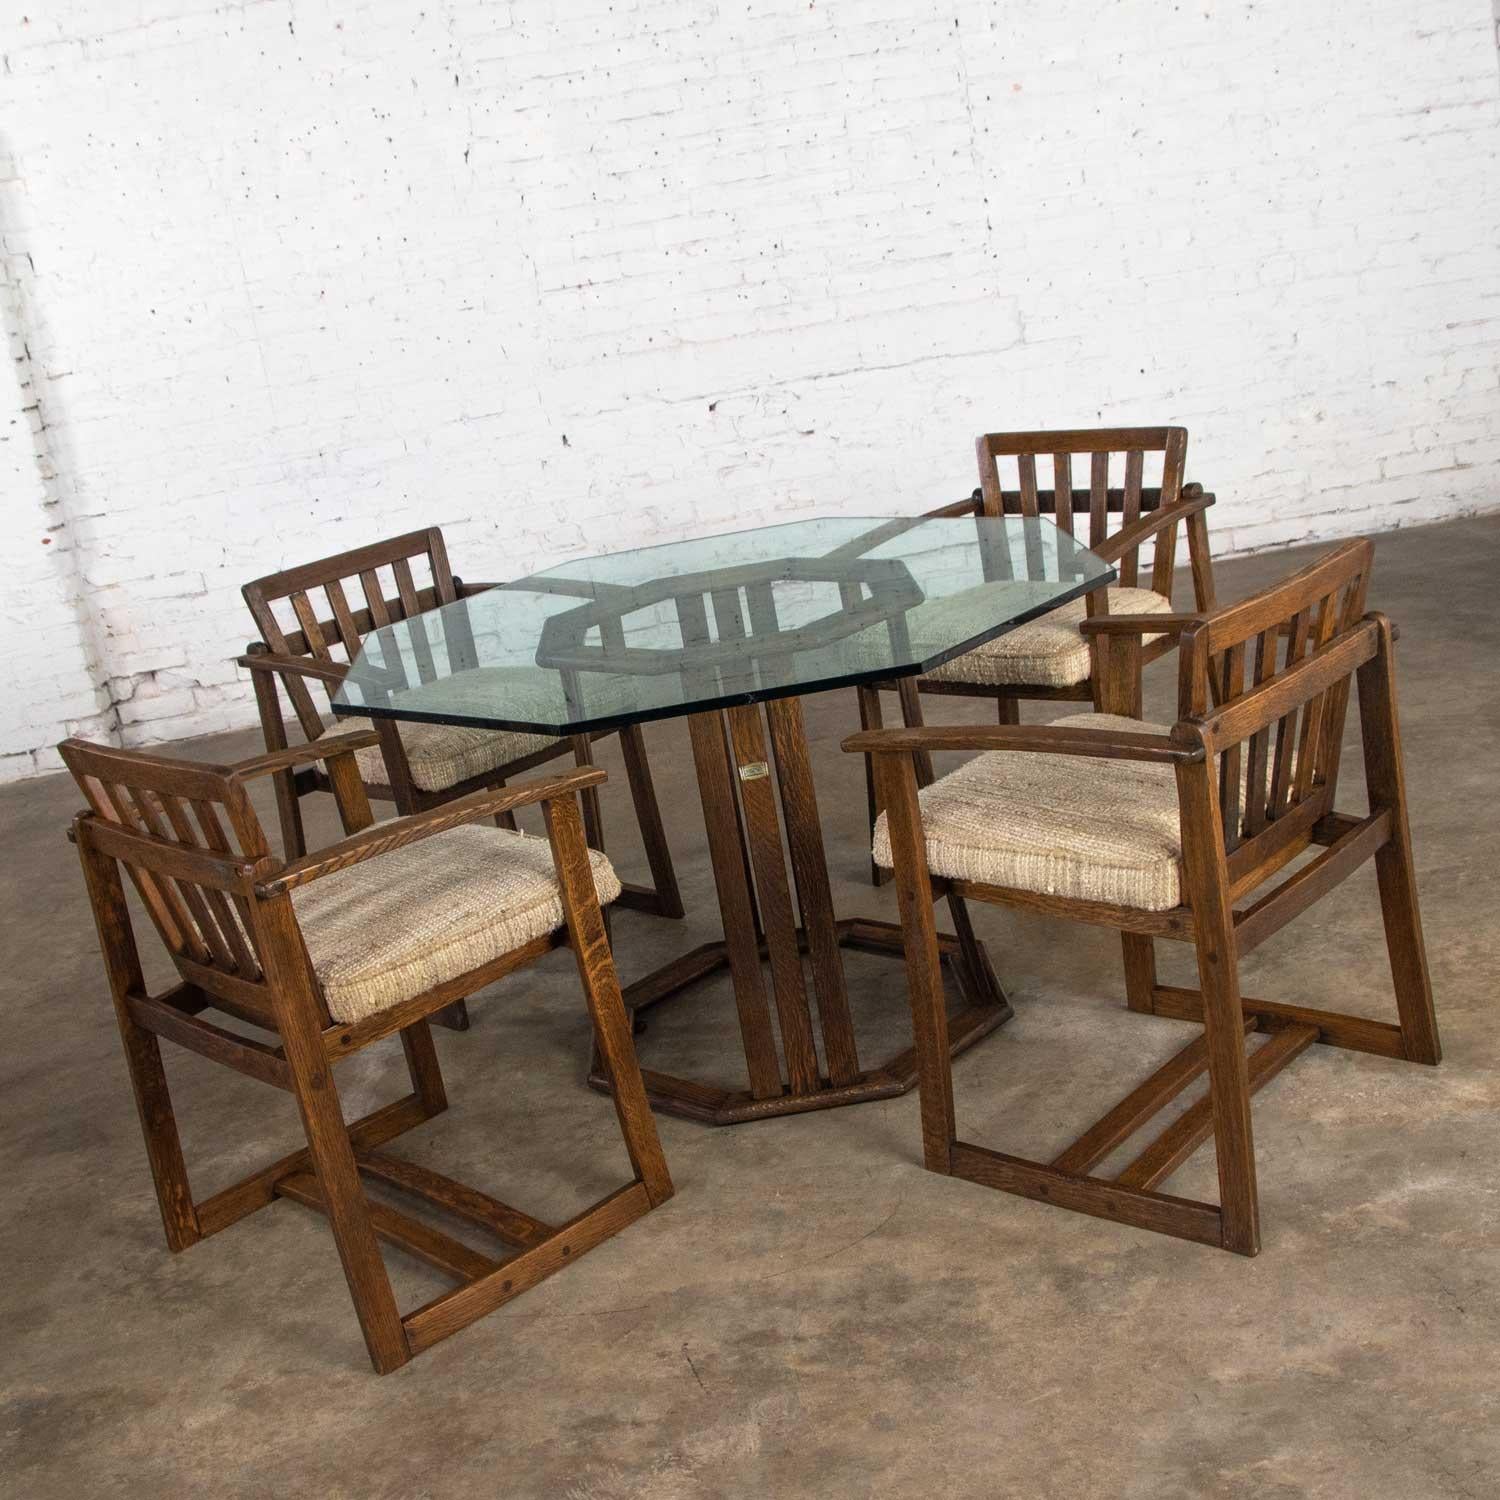 Superbe table à manger ou table de jeu originale en StavOak avec plateau en verre et quatre (4) chaises:: conçue par Jobie G. Redmond et fabriquée à partir de douelles de barils de Jack Daniels. Cet ensemble est en très bon état. Le bois a été